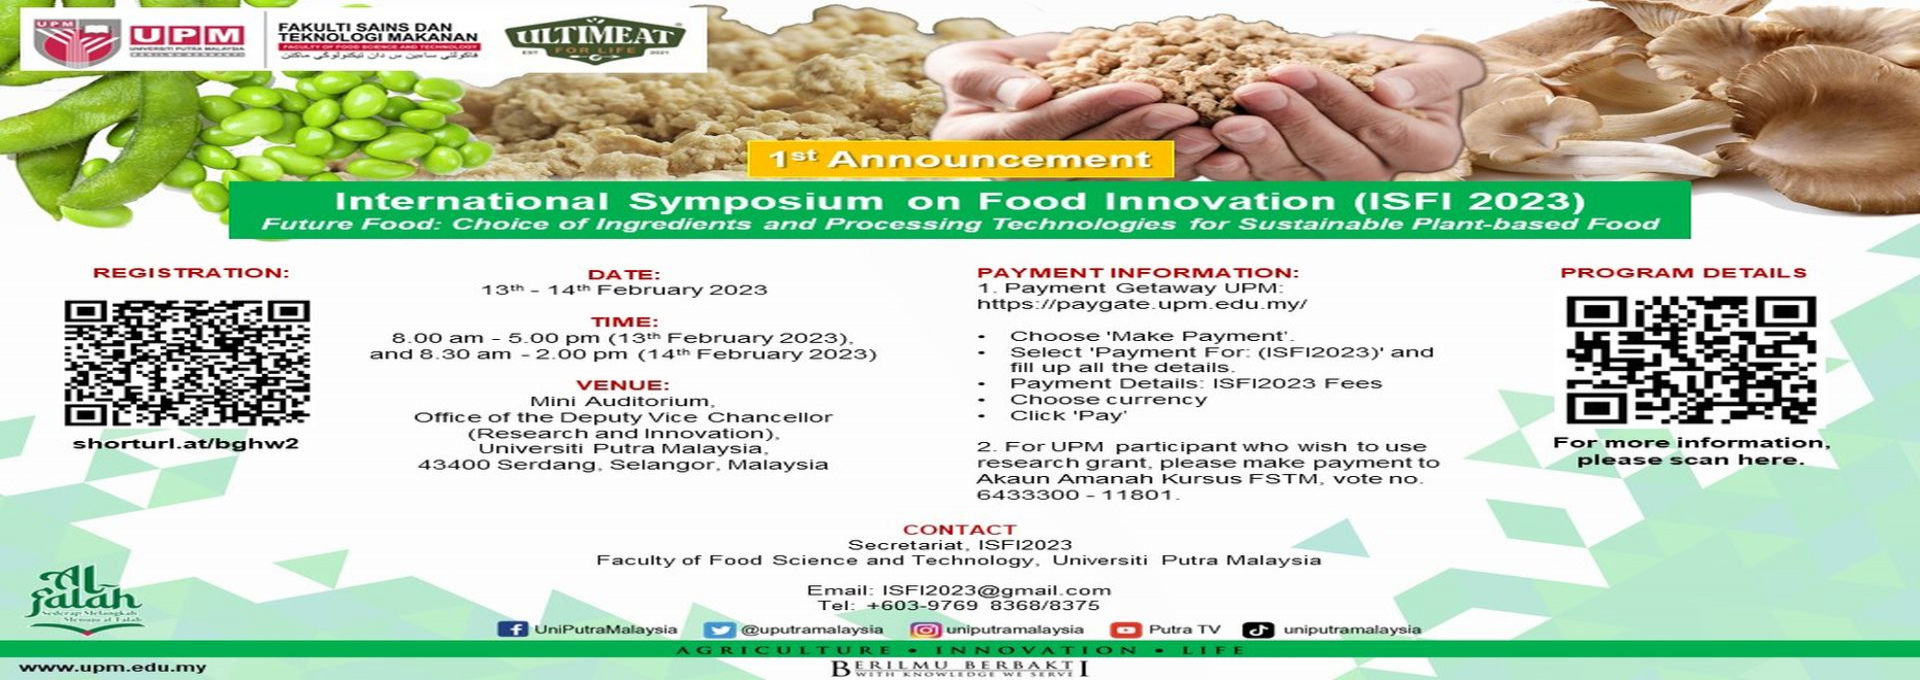 International Symposium on Food Innovation (ISFI 2023)